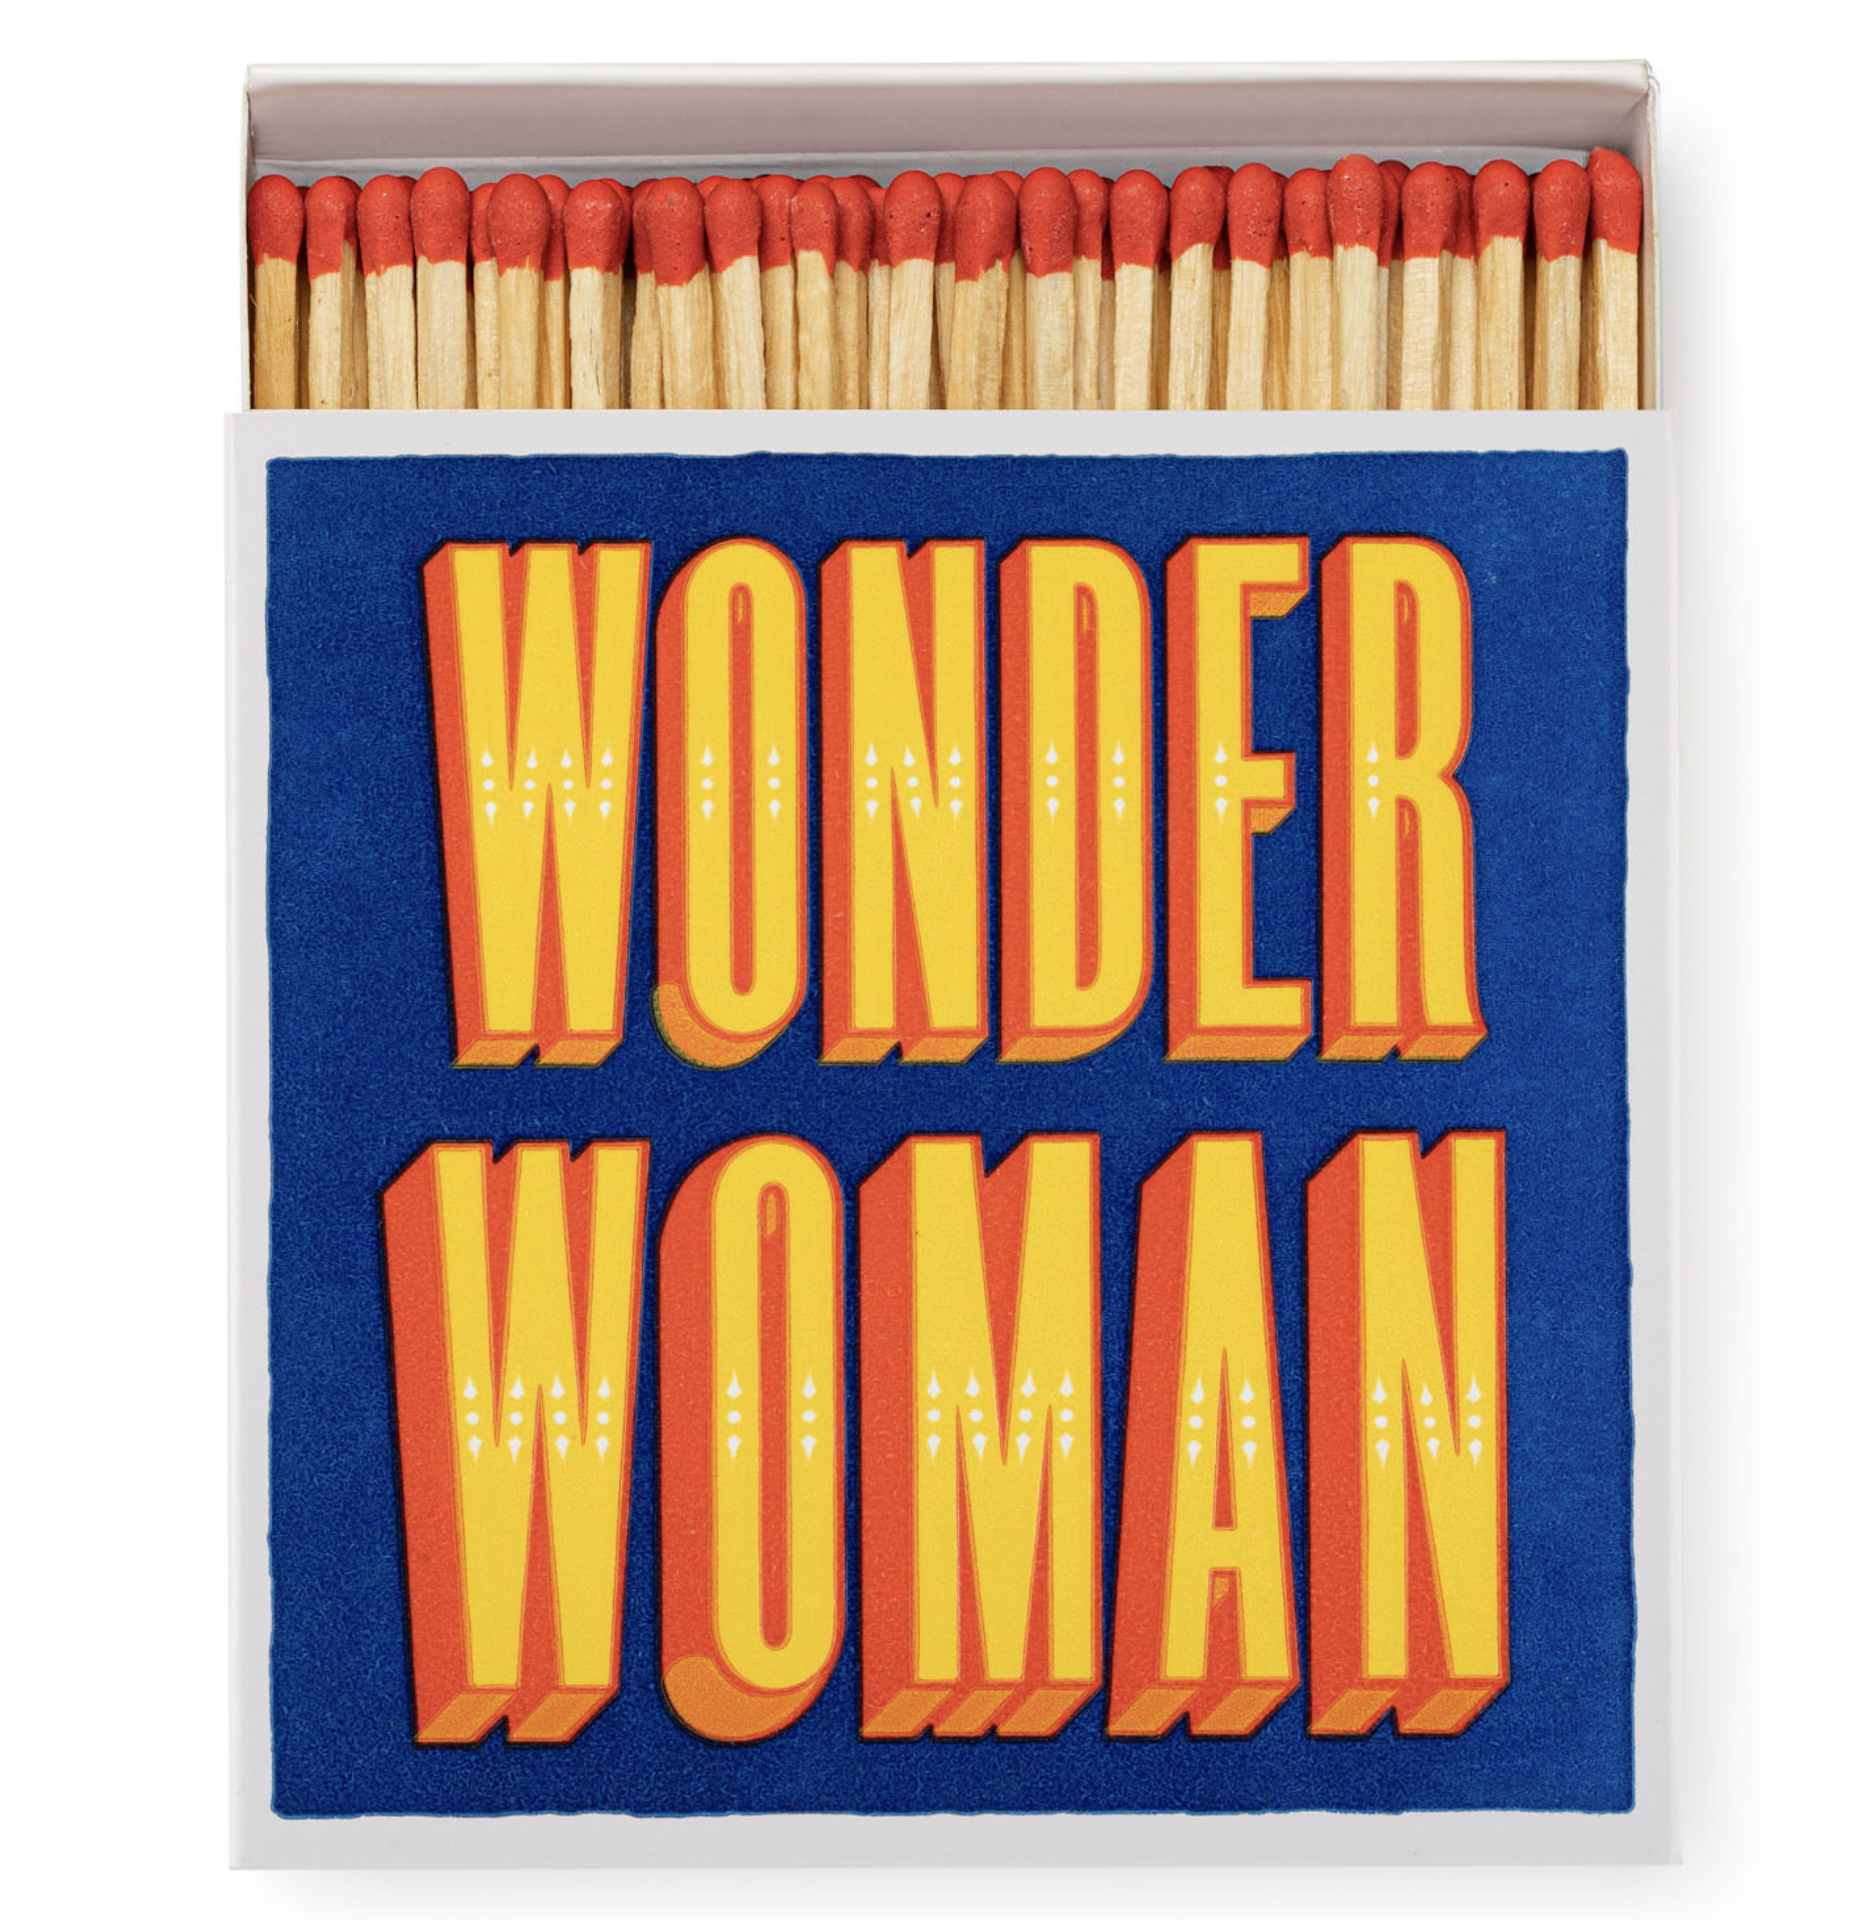 Archivist Wonder Woman Luxury Matches